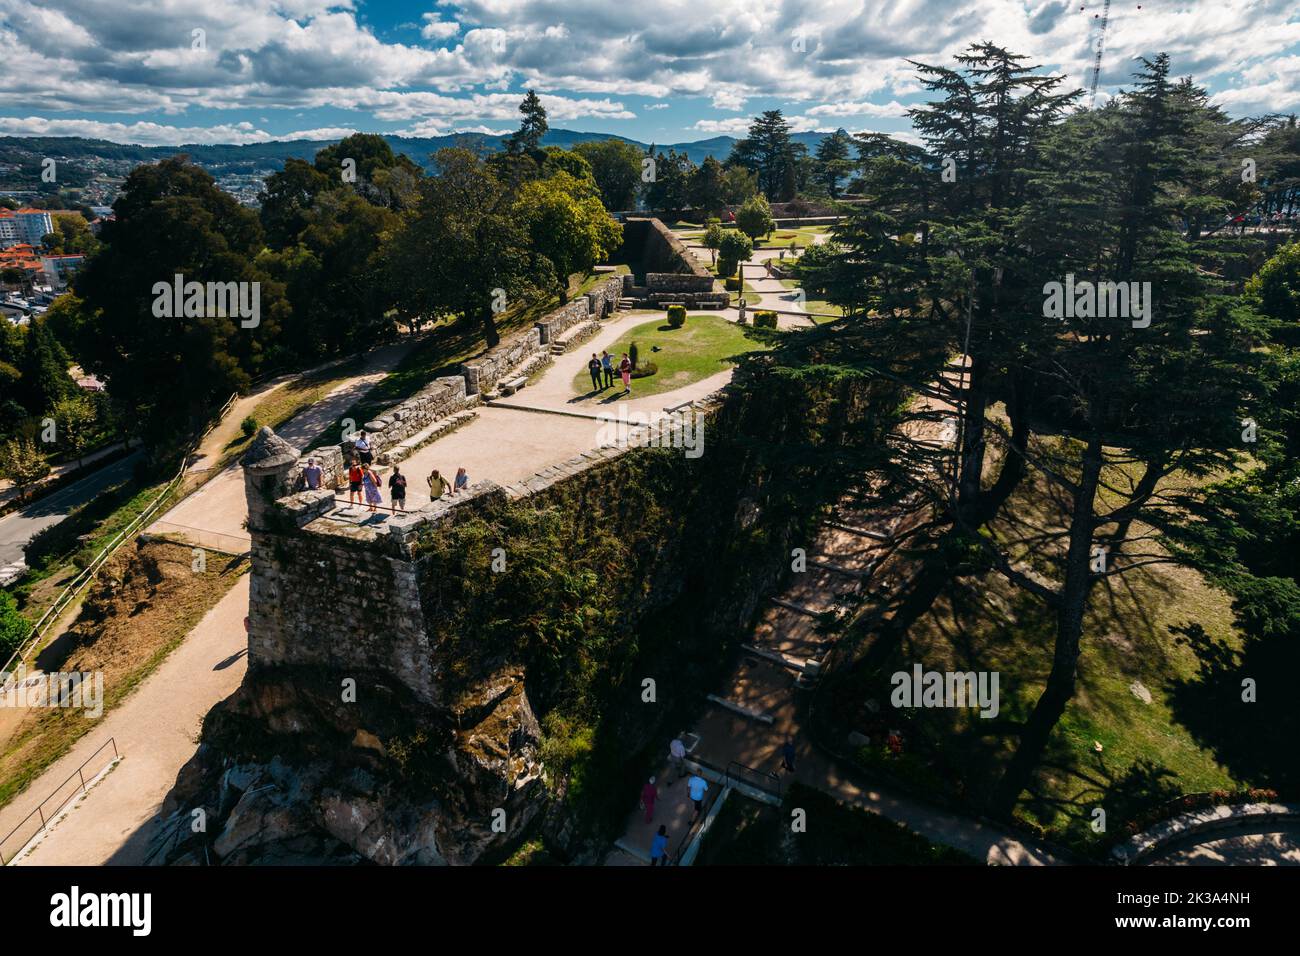 Vigo, Spain - September 25, 2022: Drone aerial view of tourists at Monte do Castro park in Vigo, Spain Stock Photo